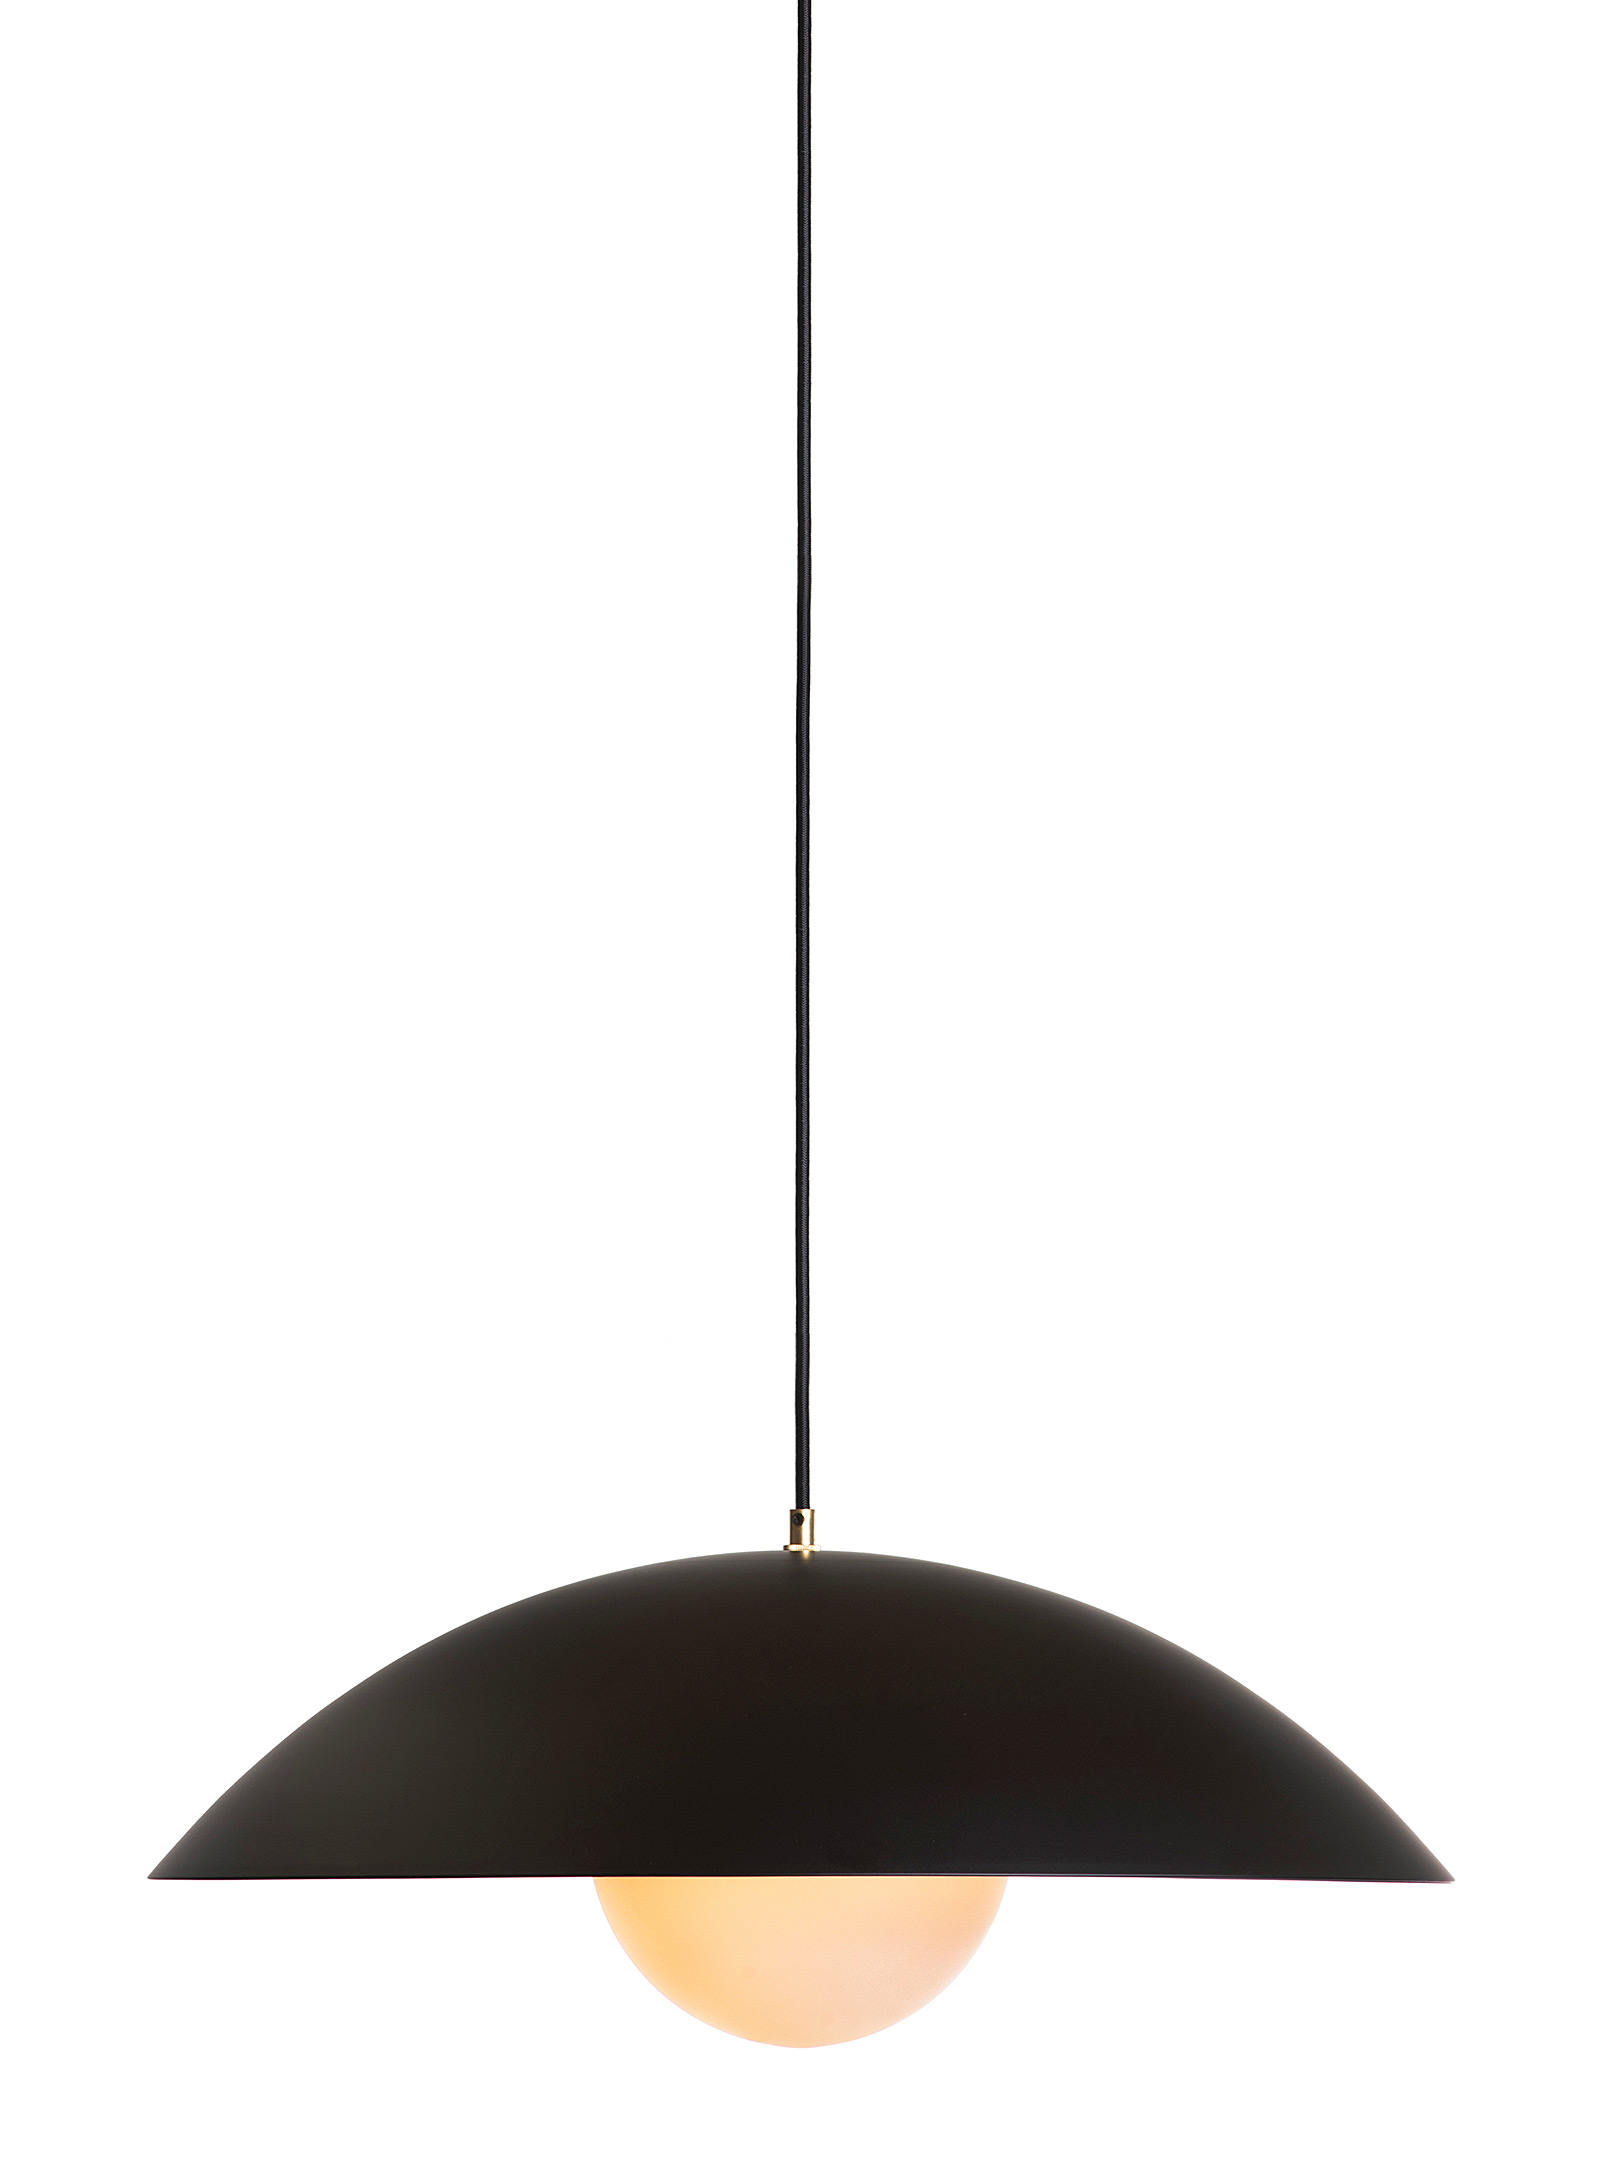 Luminaire Authentik Danoise Hanging Lamp 61 Cm In Diameter In Black